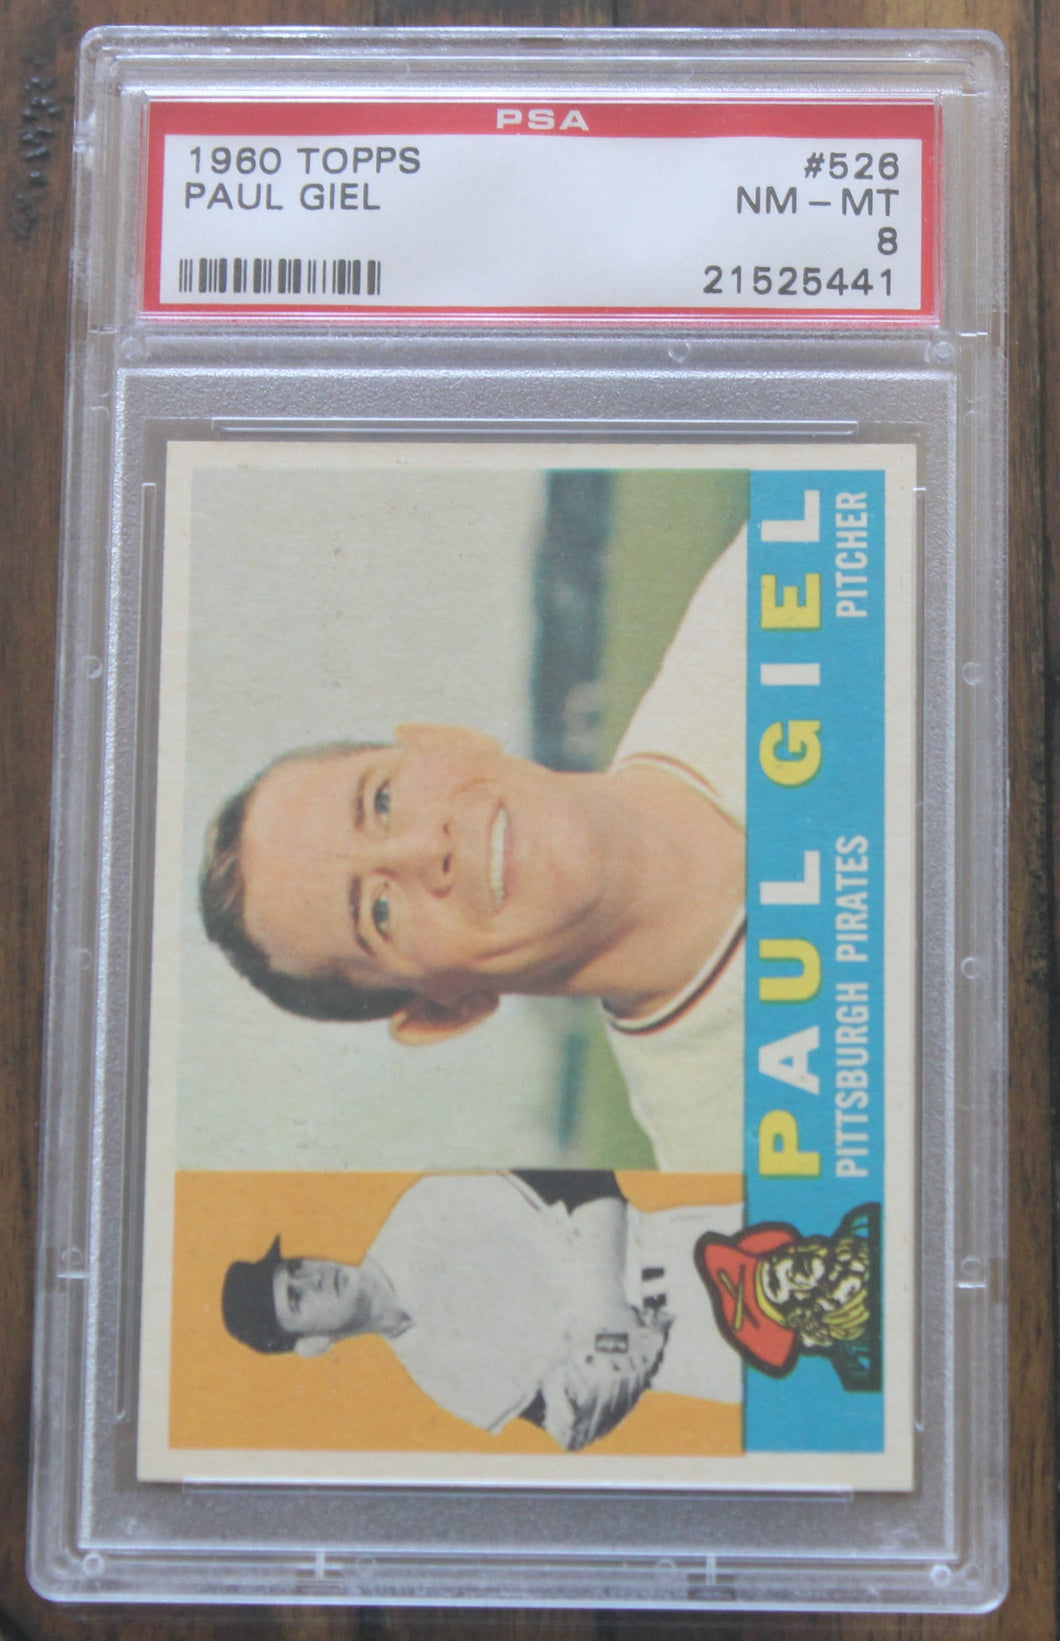 1960 Topps Paul Giel #526 PSA NM-MT 8